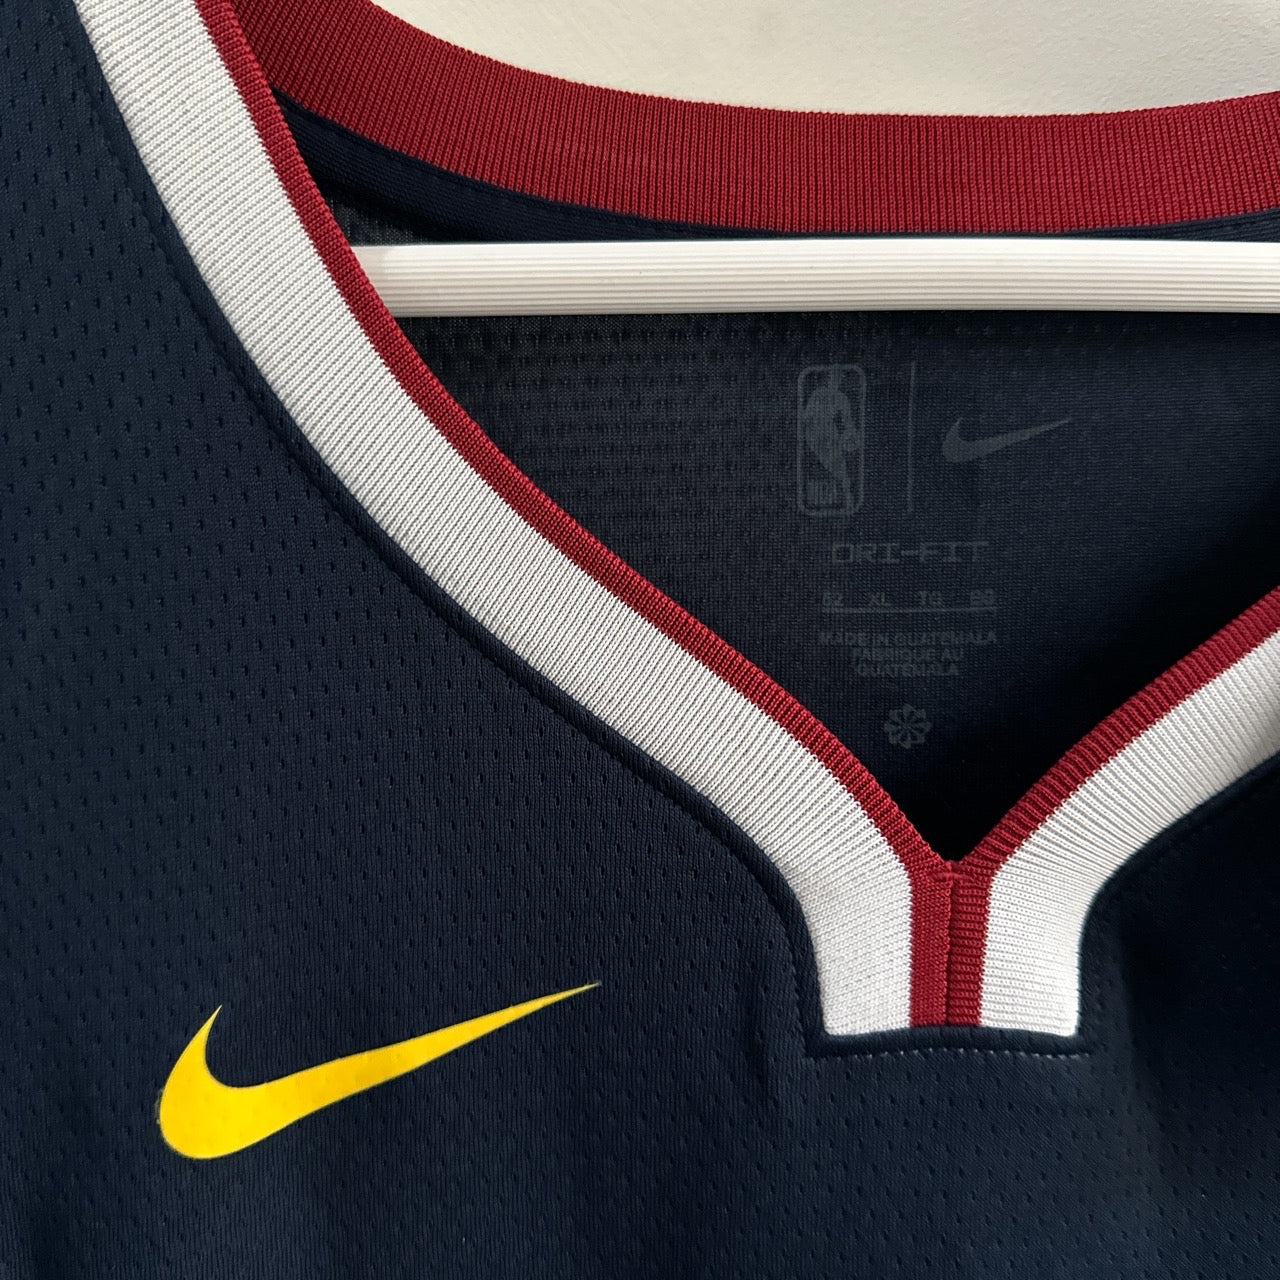 Denver Nuggets Nikola Jokic Nike jersey - XL